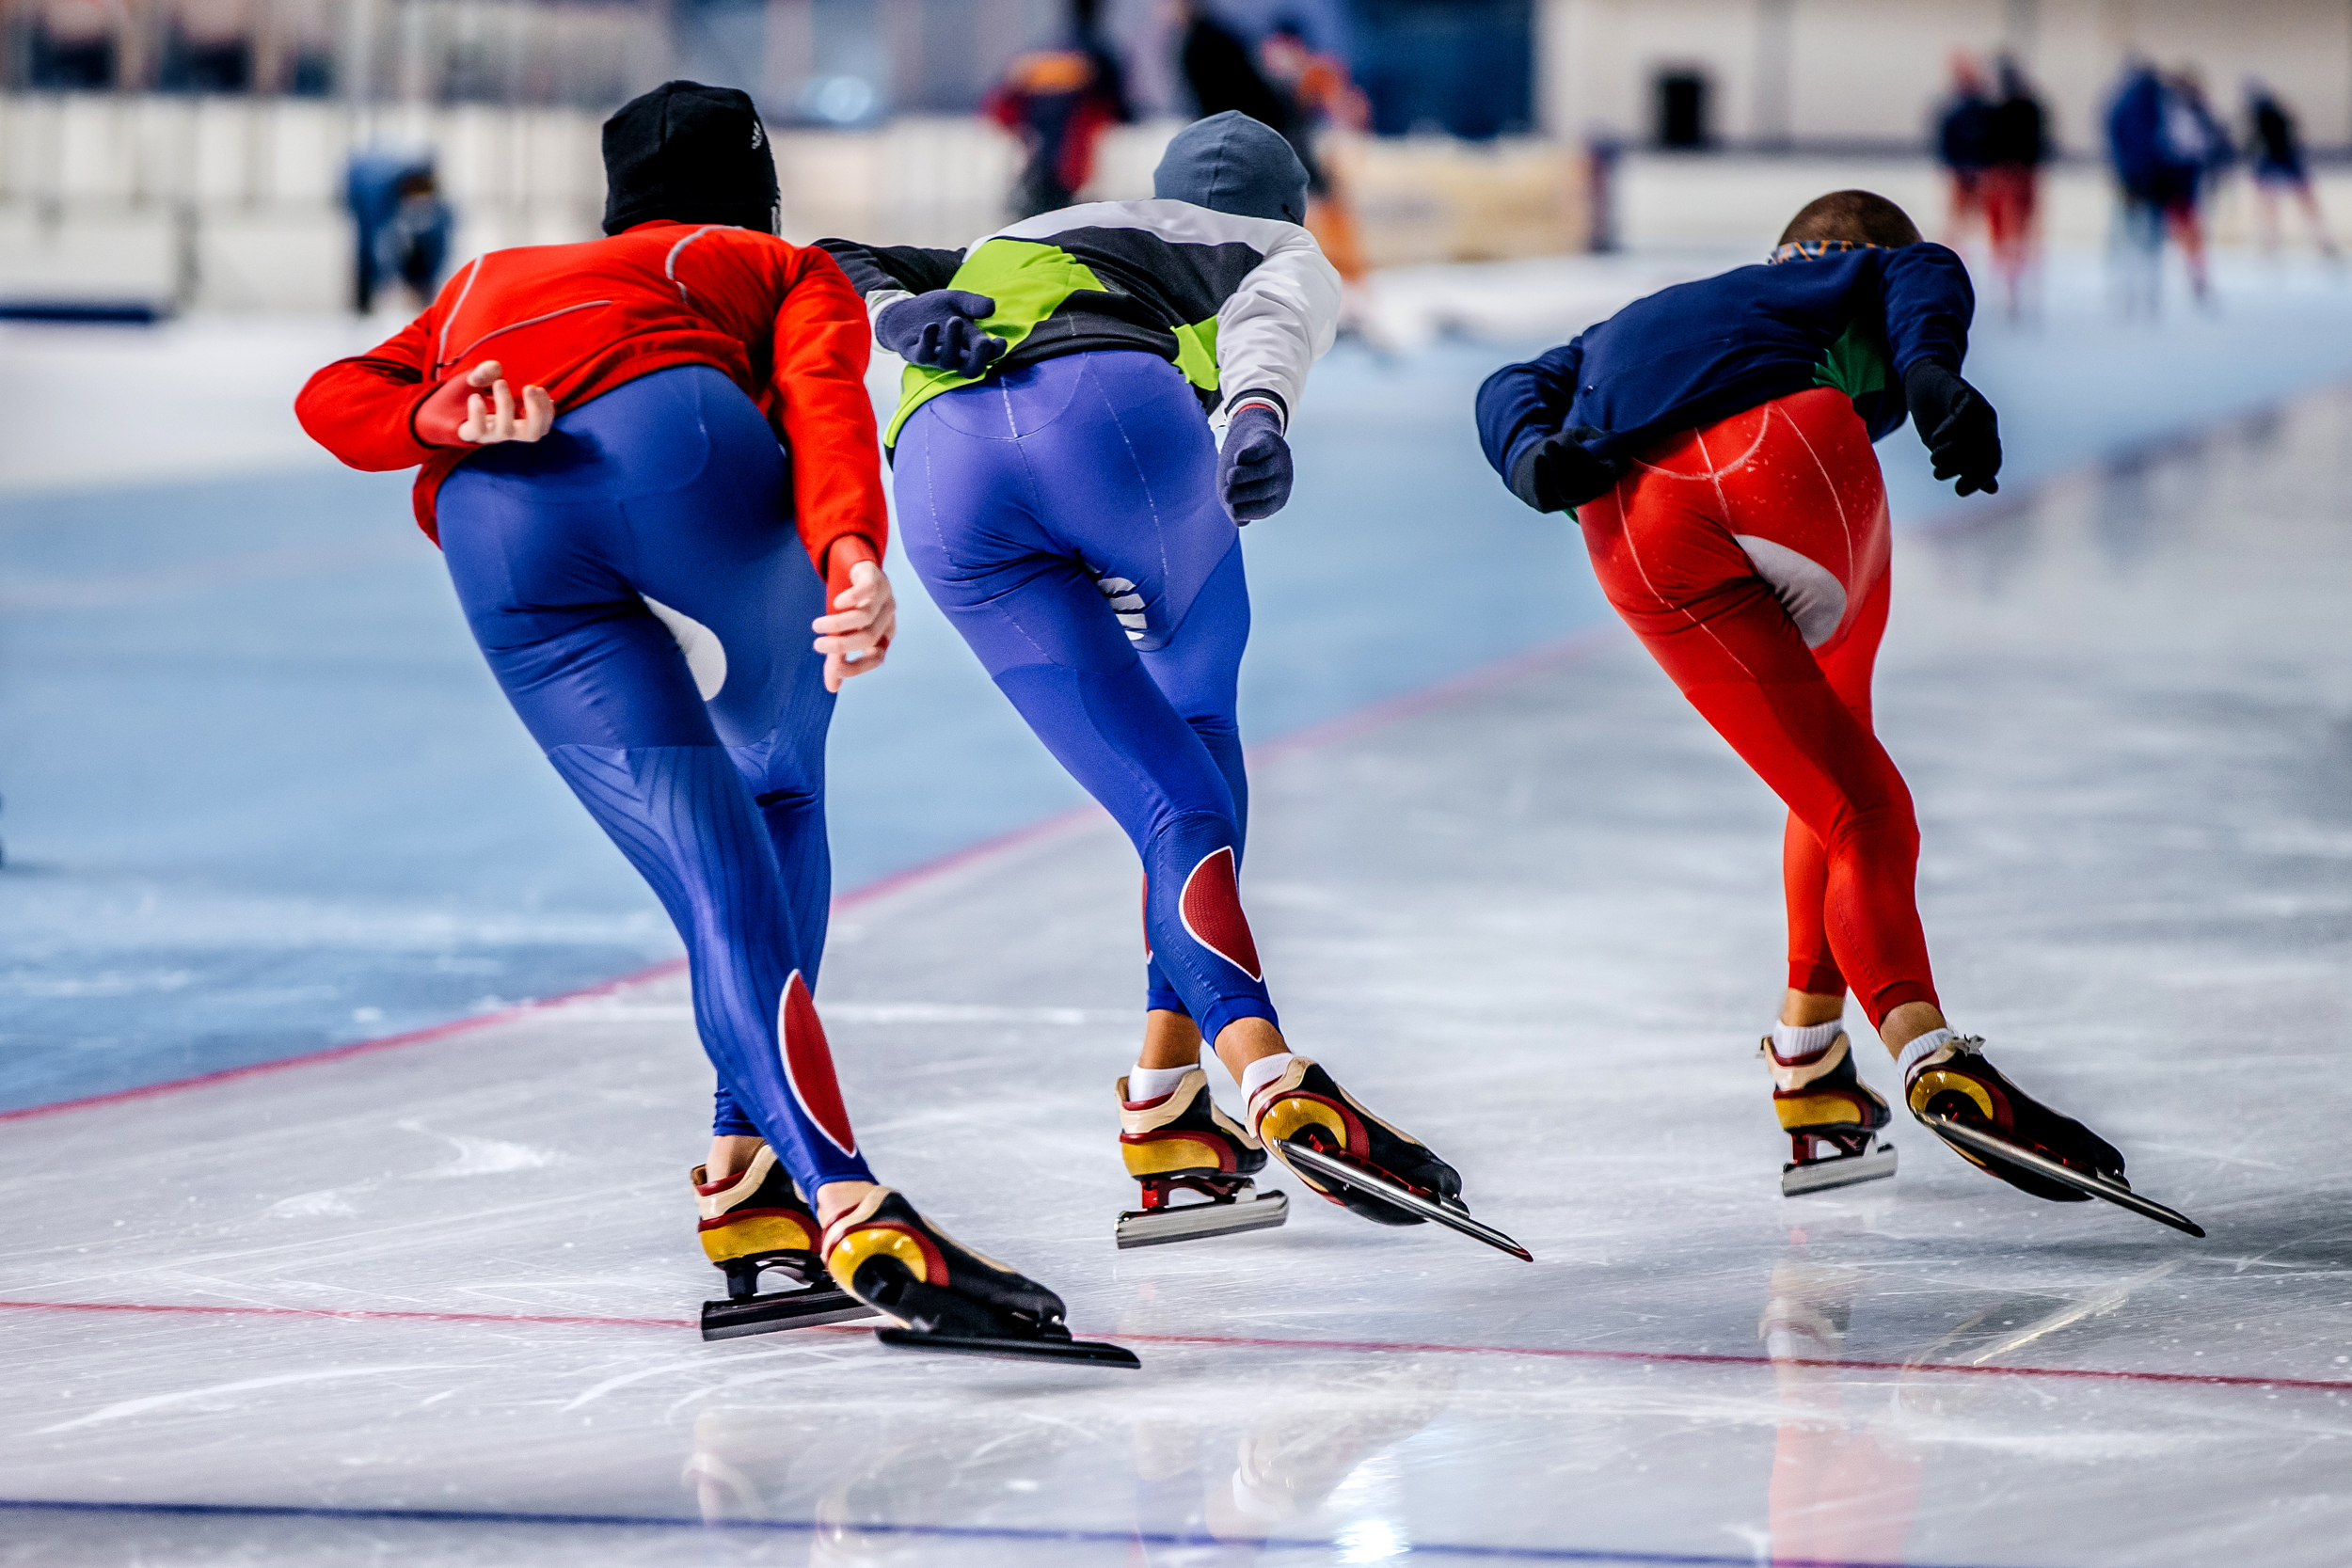 Kom gezellig schaatsen bij de kunstijsbaan in Breda!